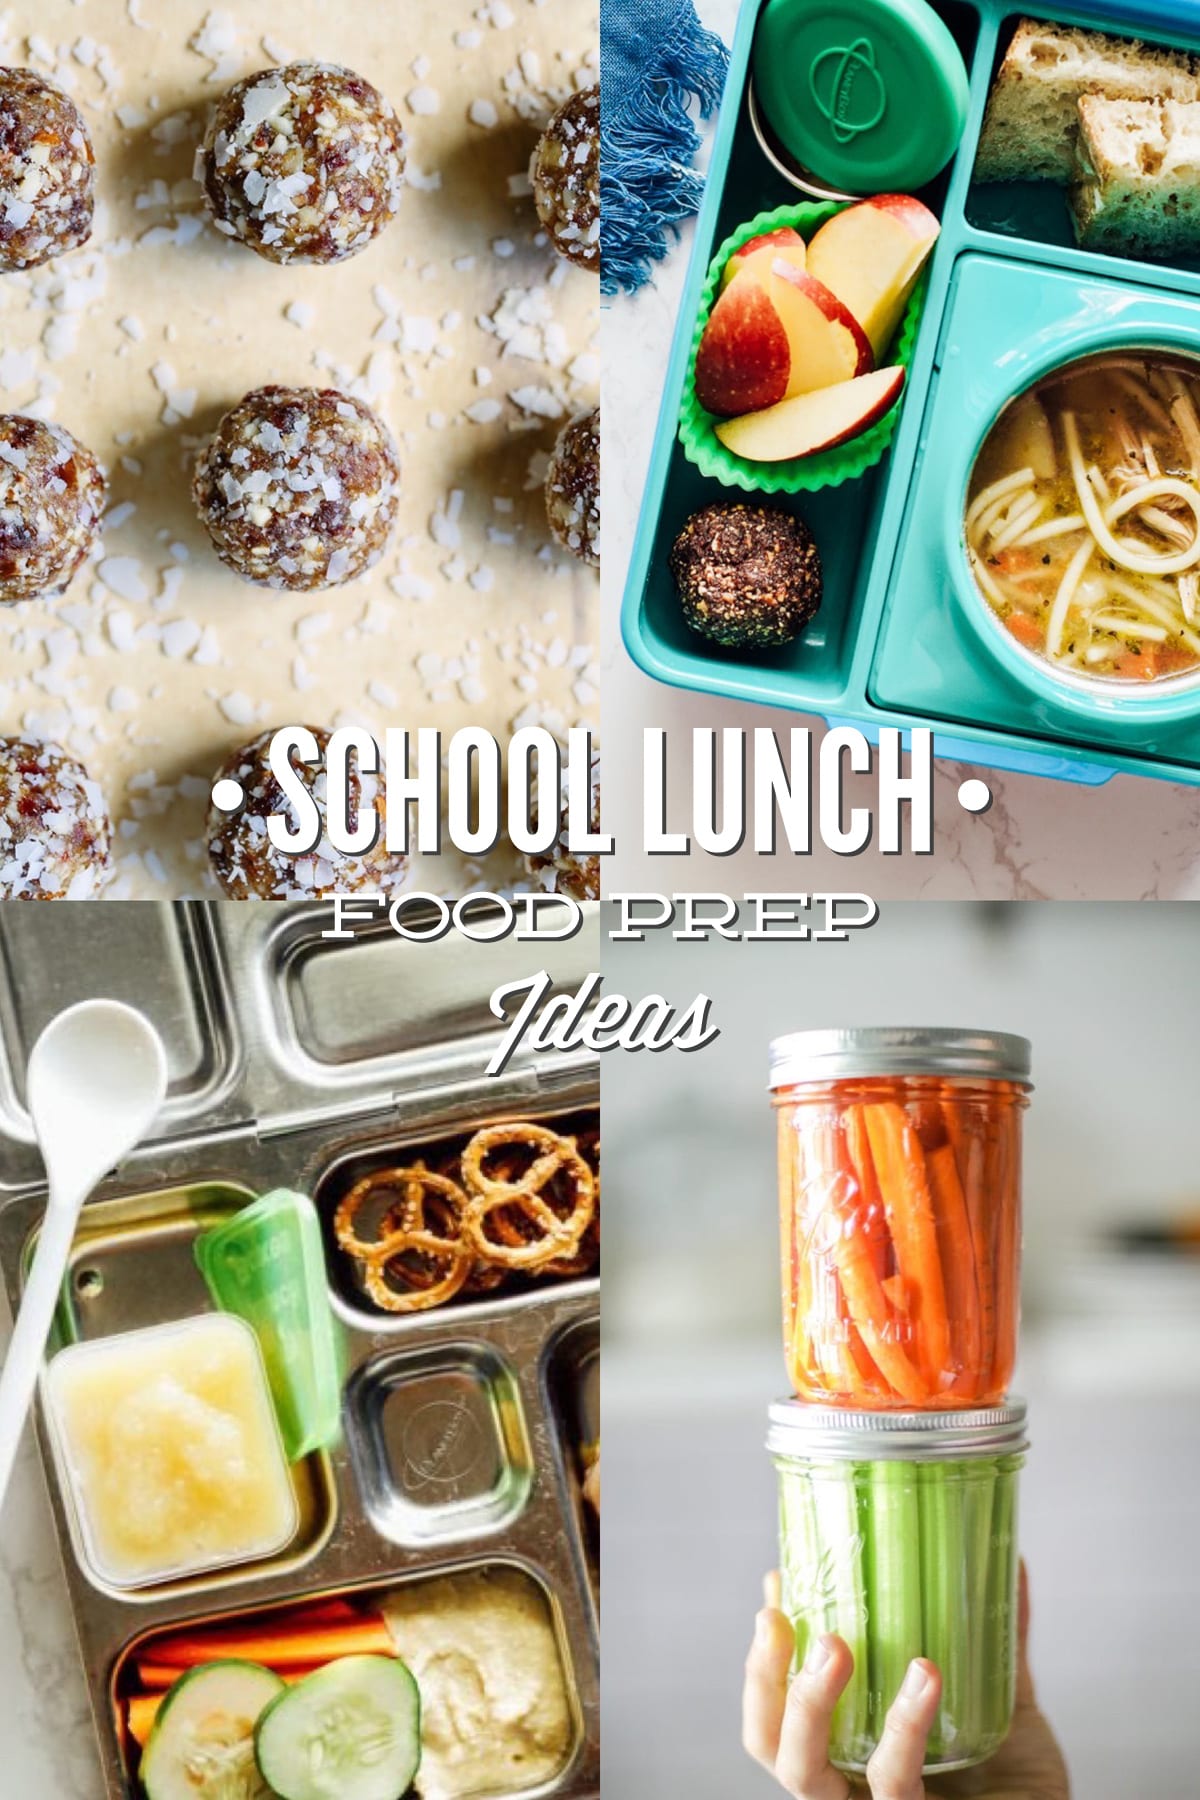 6 School Lunch Food Prep Ideas